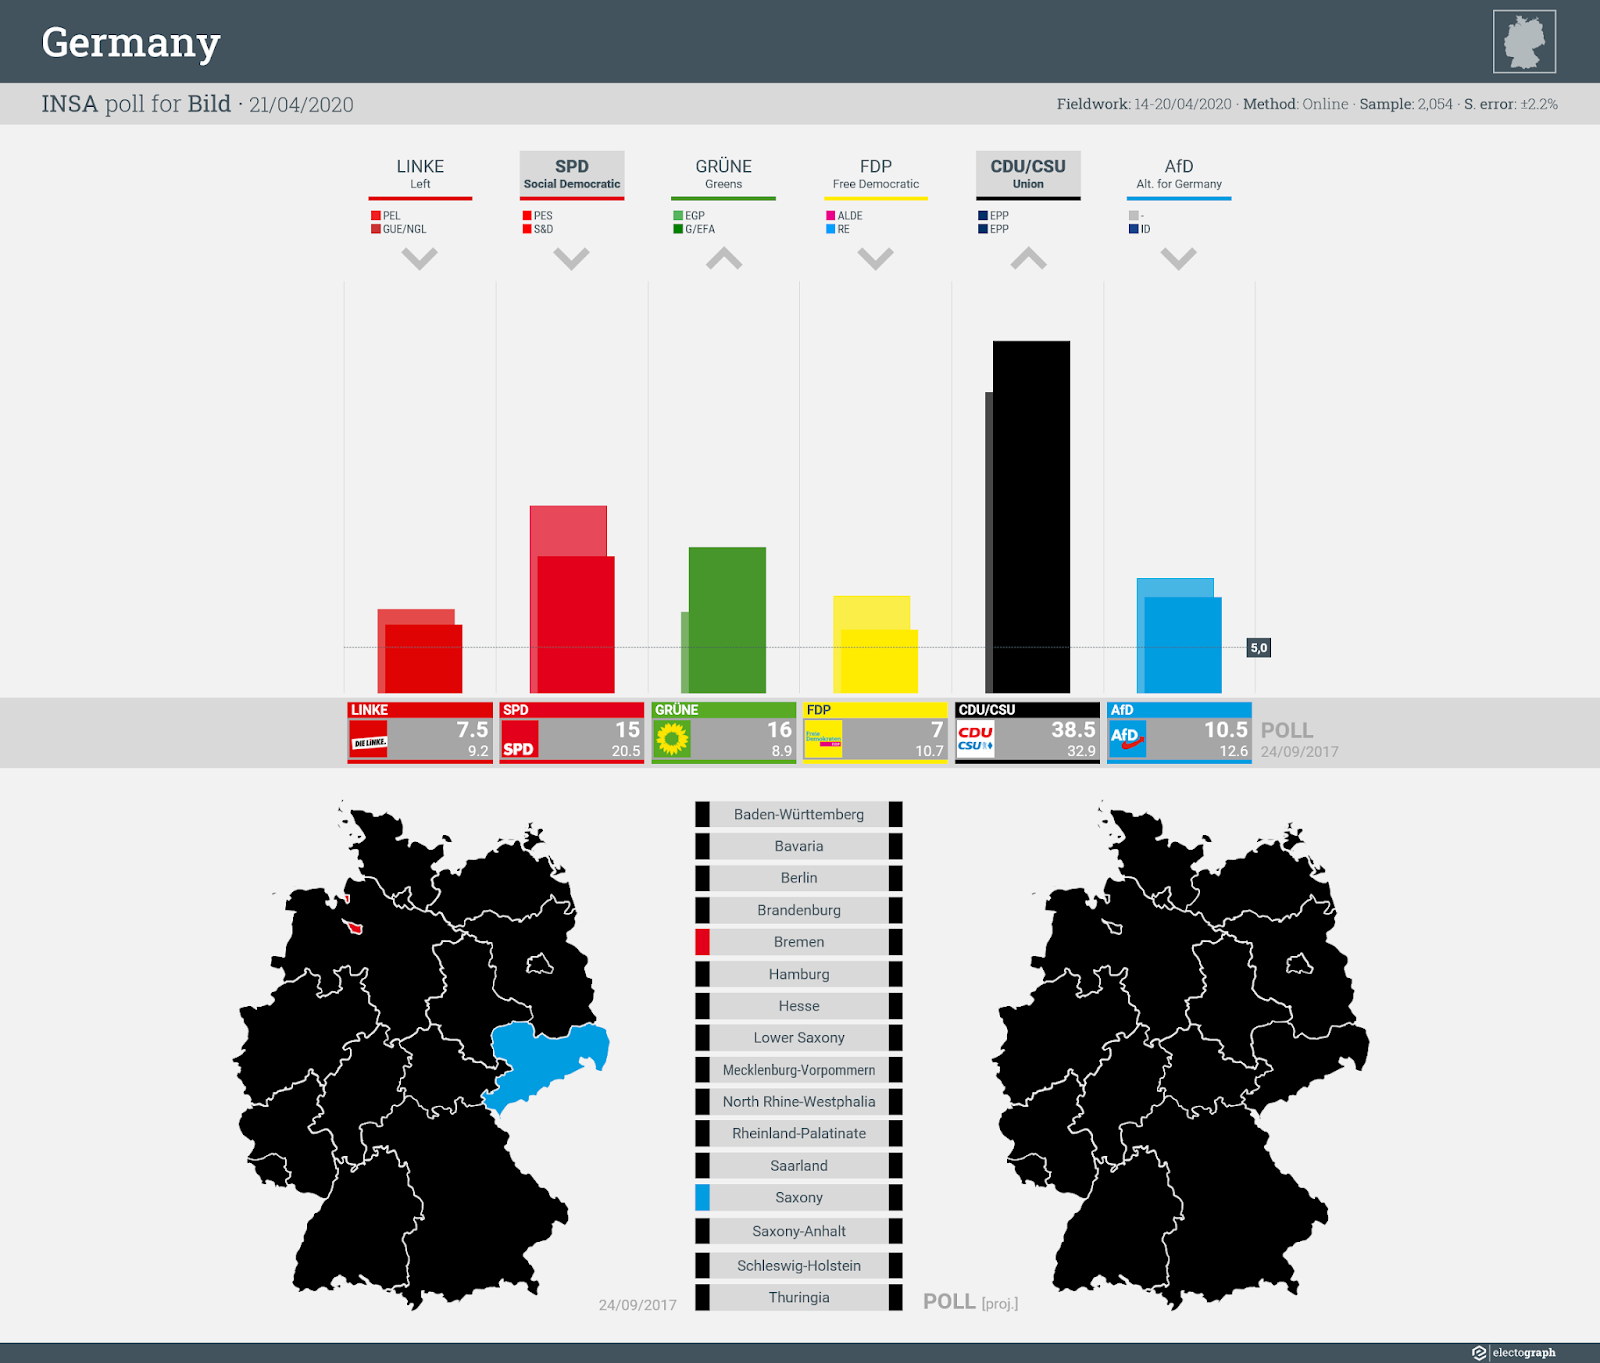 GERMANY: INSA poll chart for Bild, 21 April 2020